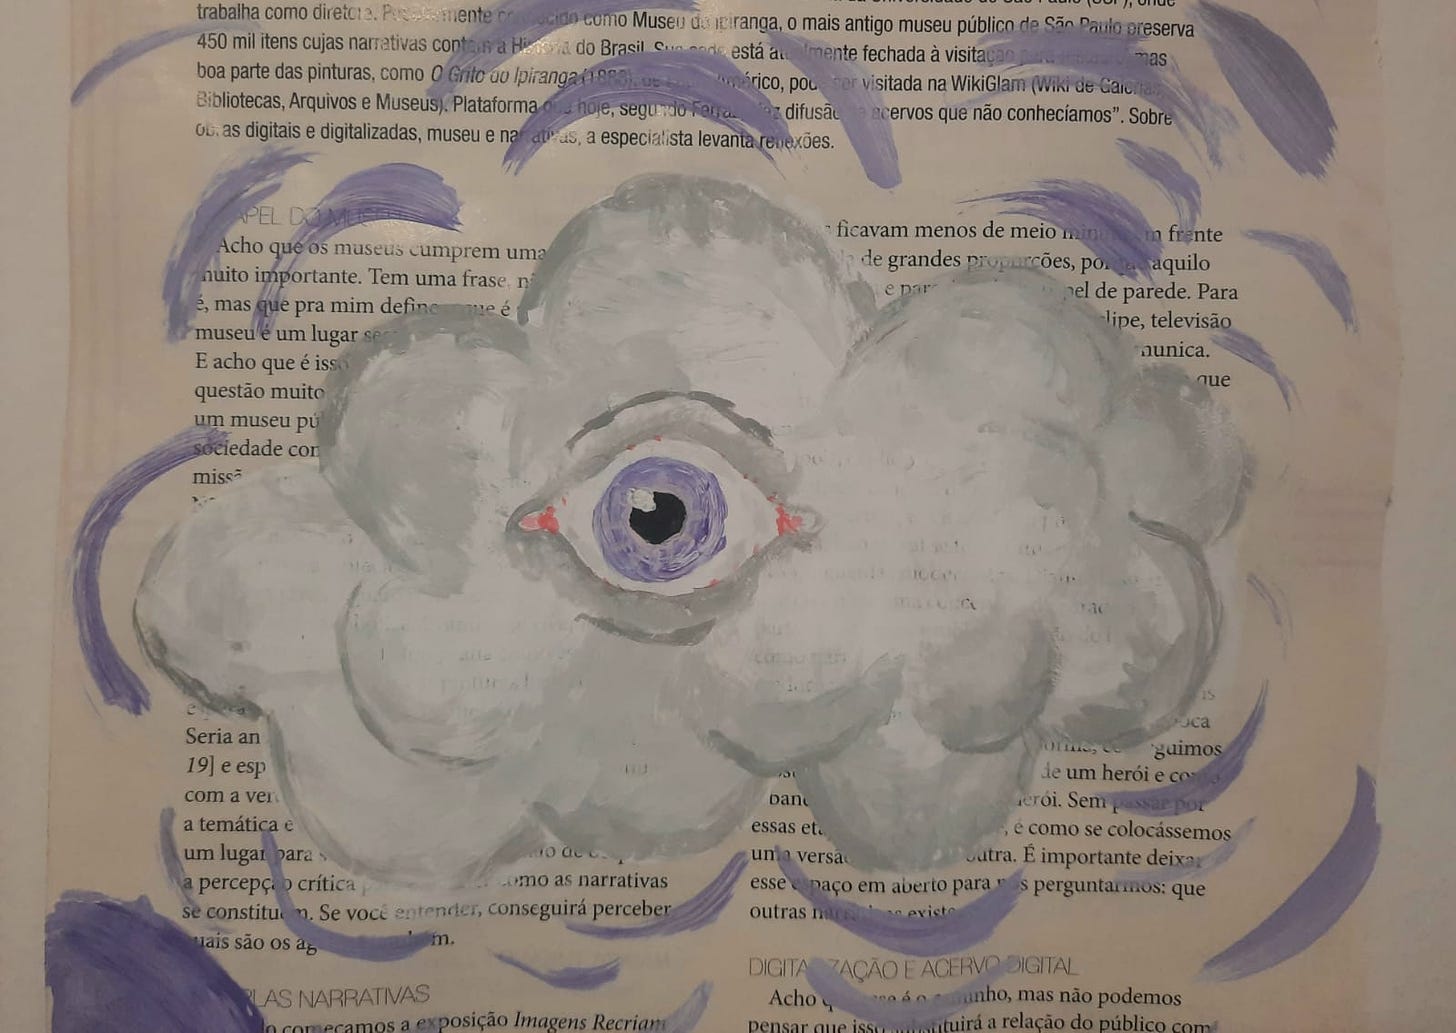 Pintura de guache cobrindo parcialmente texto de uma página de revista. É uma nuvem branco-acizentada com um olho realista no centro, de íris lilás, olhando direto pra quem está vendo a pintura. Algumas linhas liláses como um halo para a nuvem.